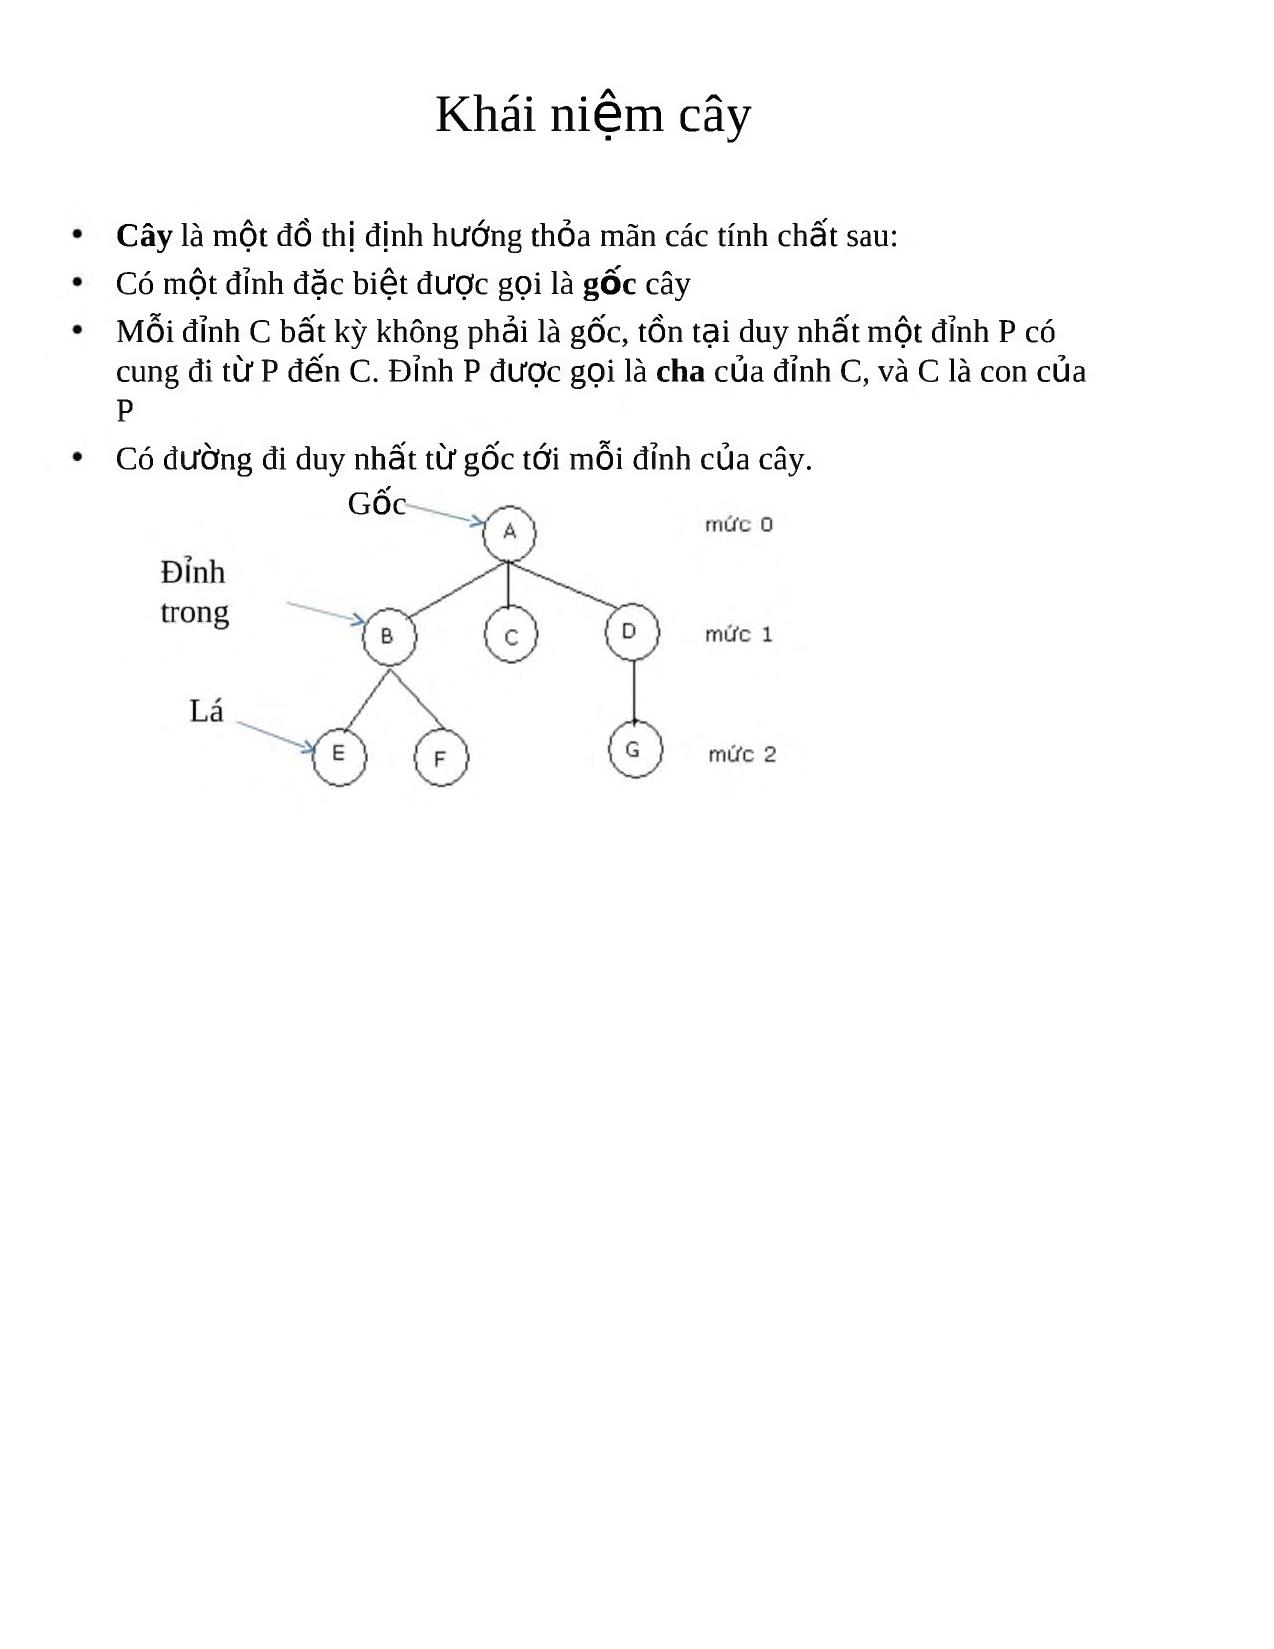 Cây (Tree) trang 2